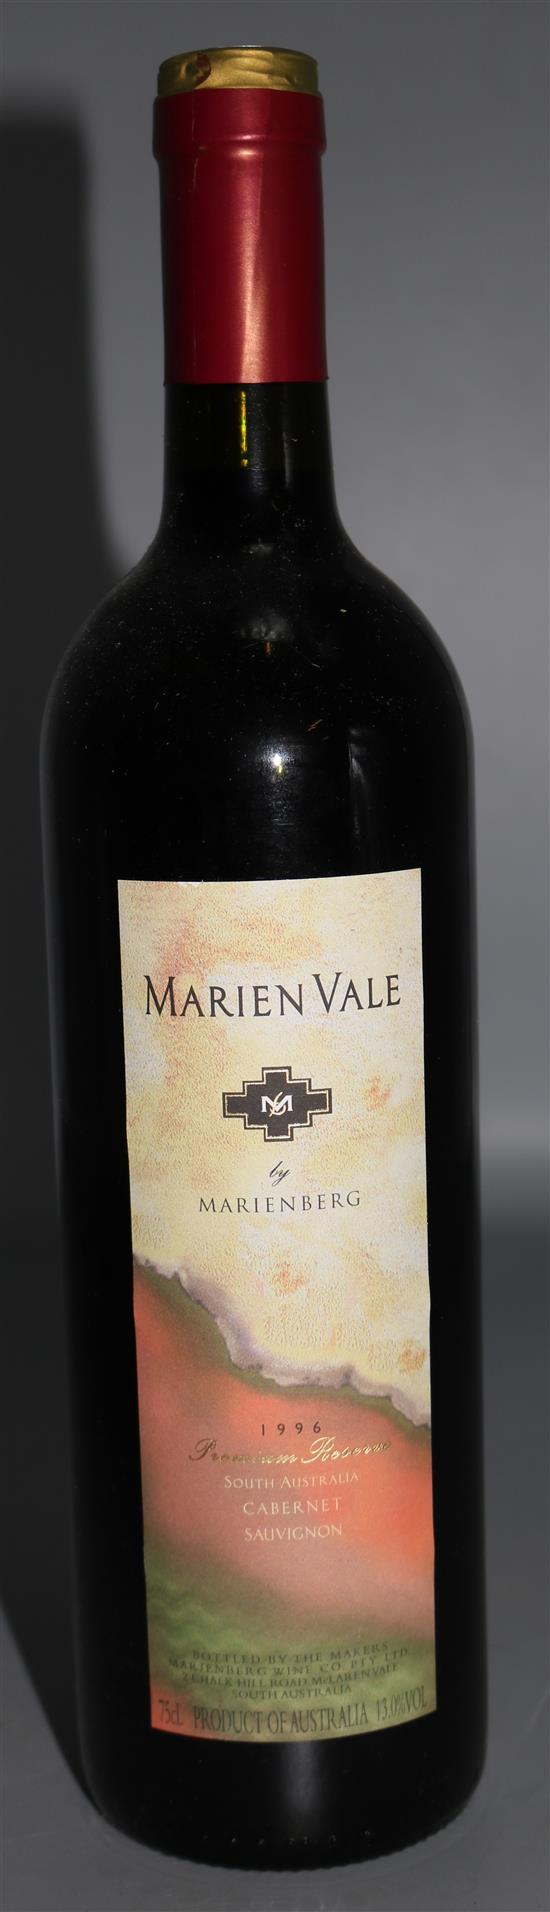 12 Marienberg Premium reserve Marien Vale